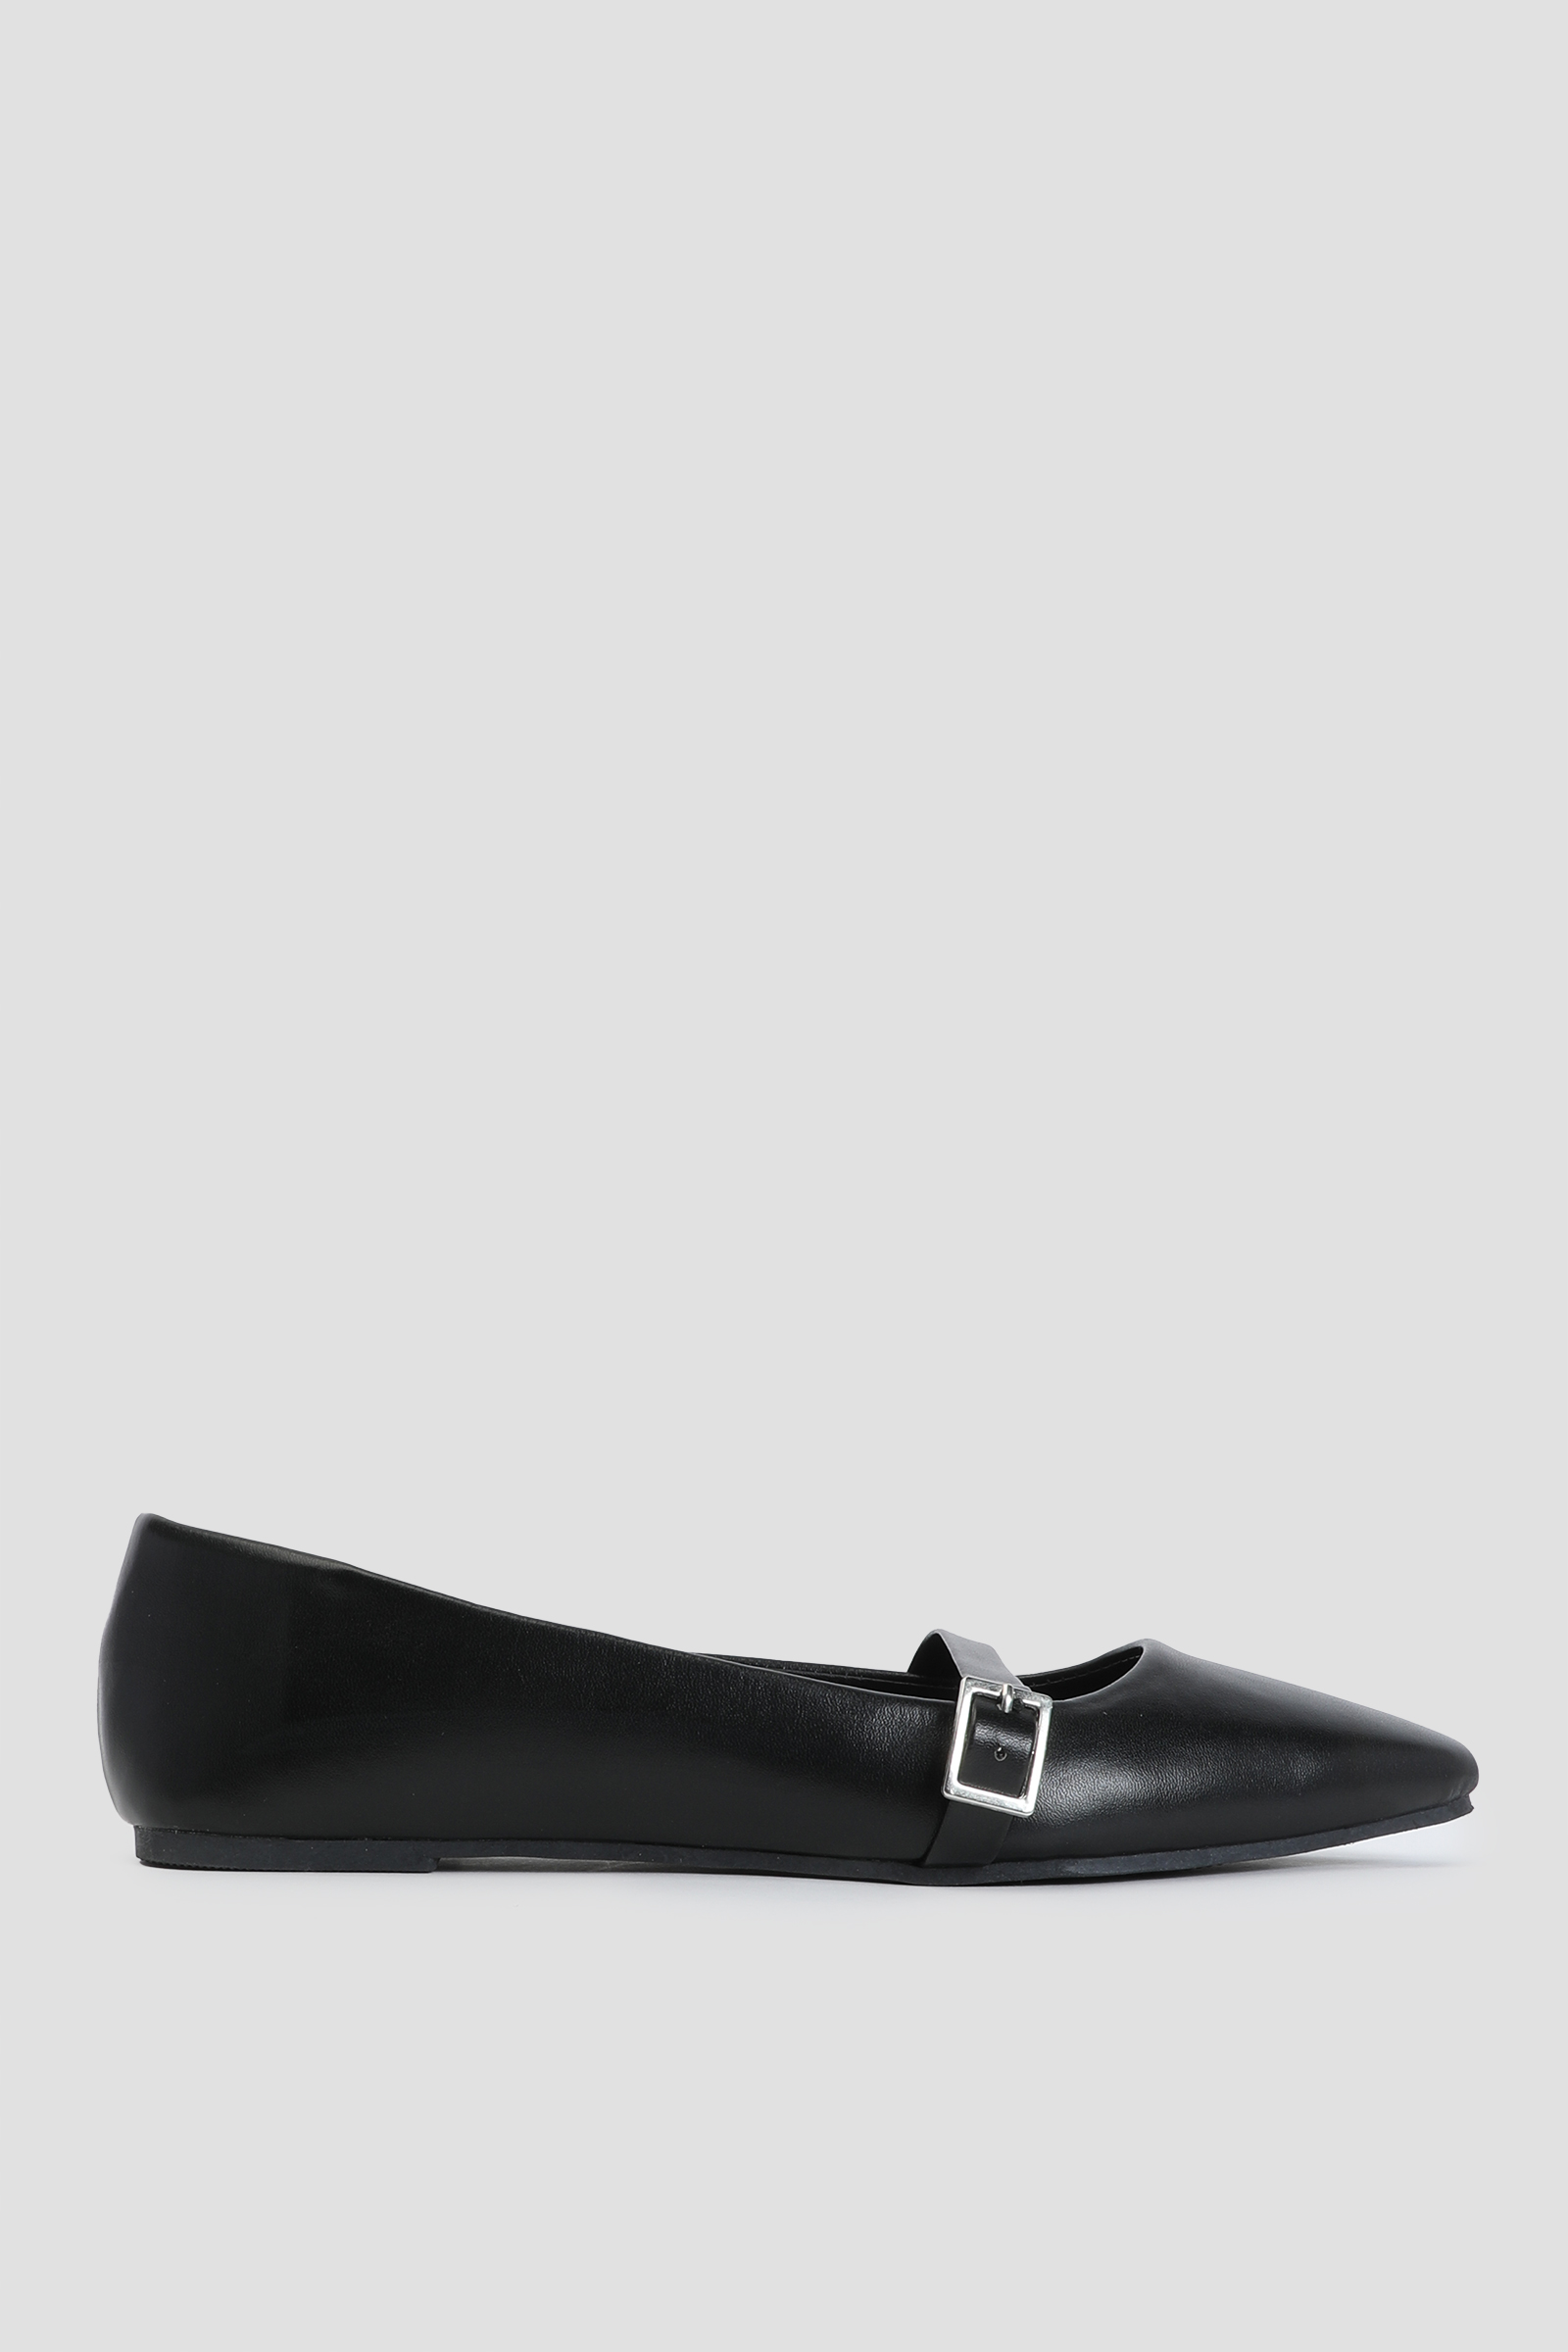 Ardene Black Mary Jane Flats | Size | Faux Leather